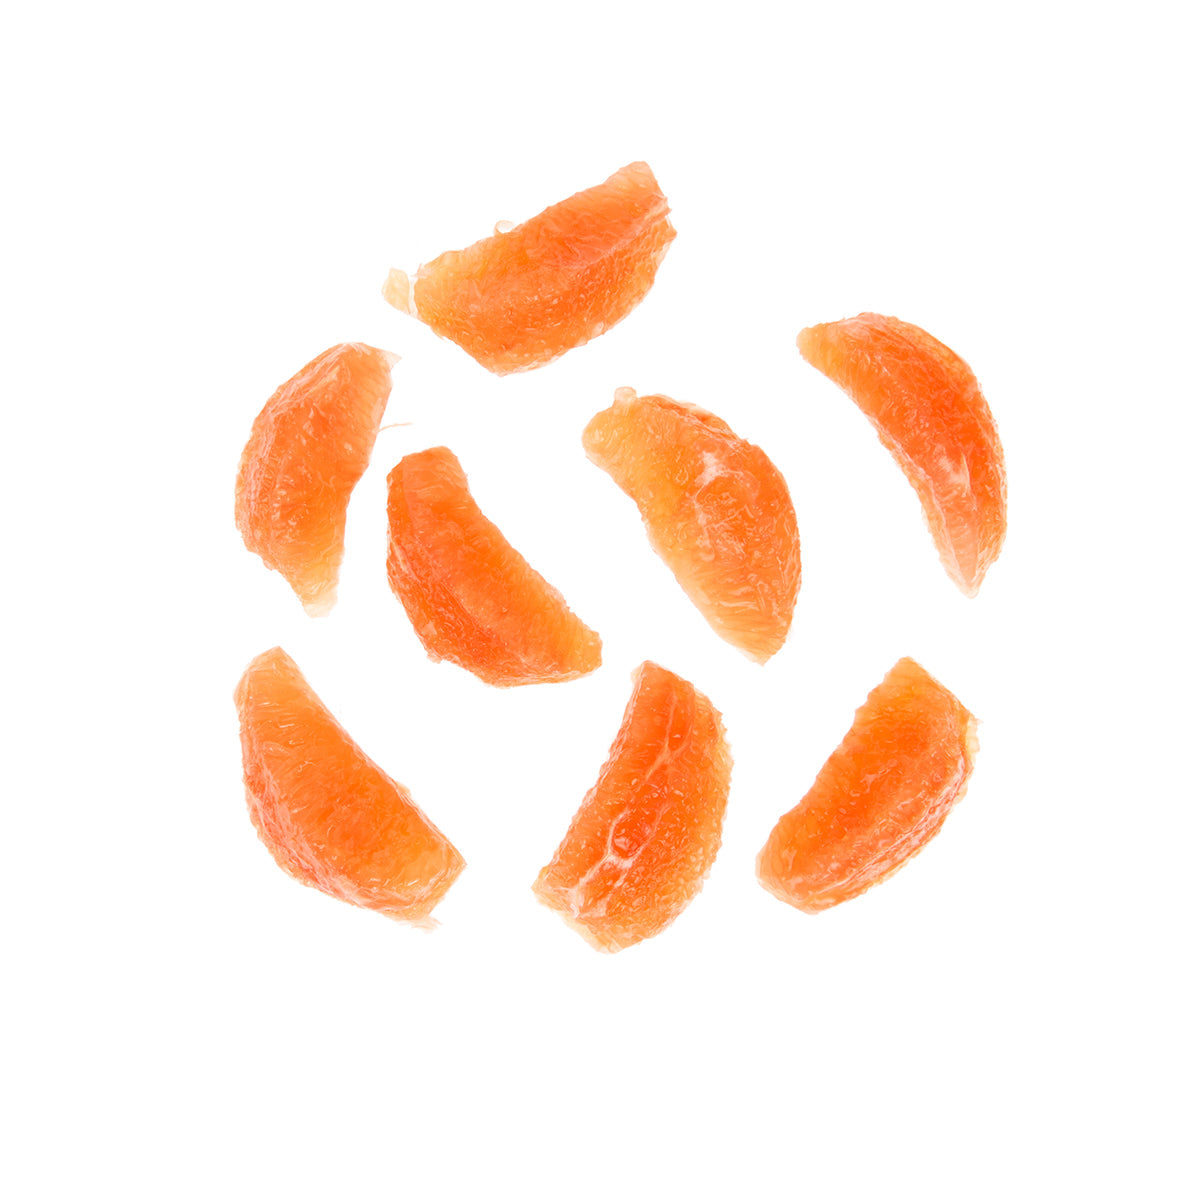 BoxNCase Fresh Grapefruit Sections 5 LB